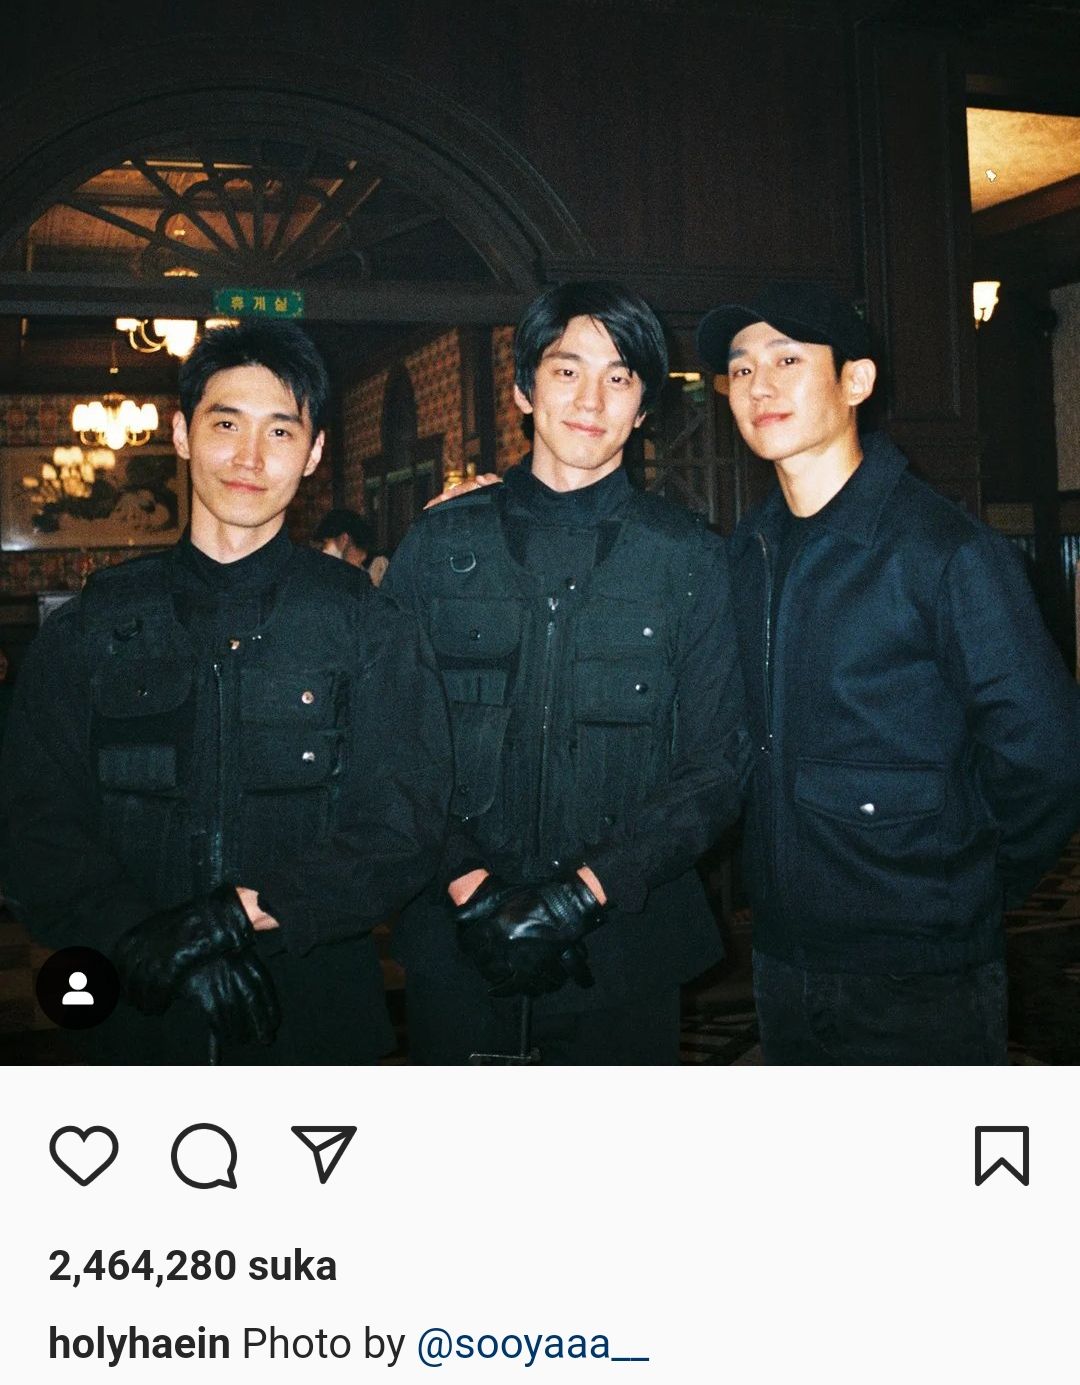 Unggahan Jung Hae In di Instagram Rabu 12 Januari 2022.